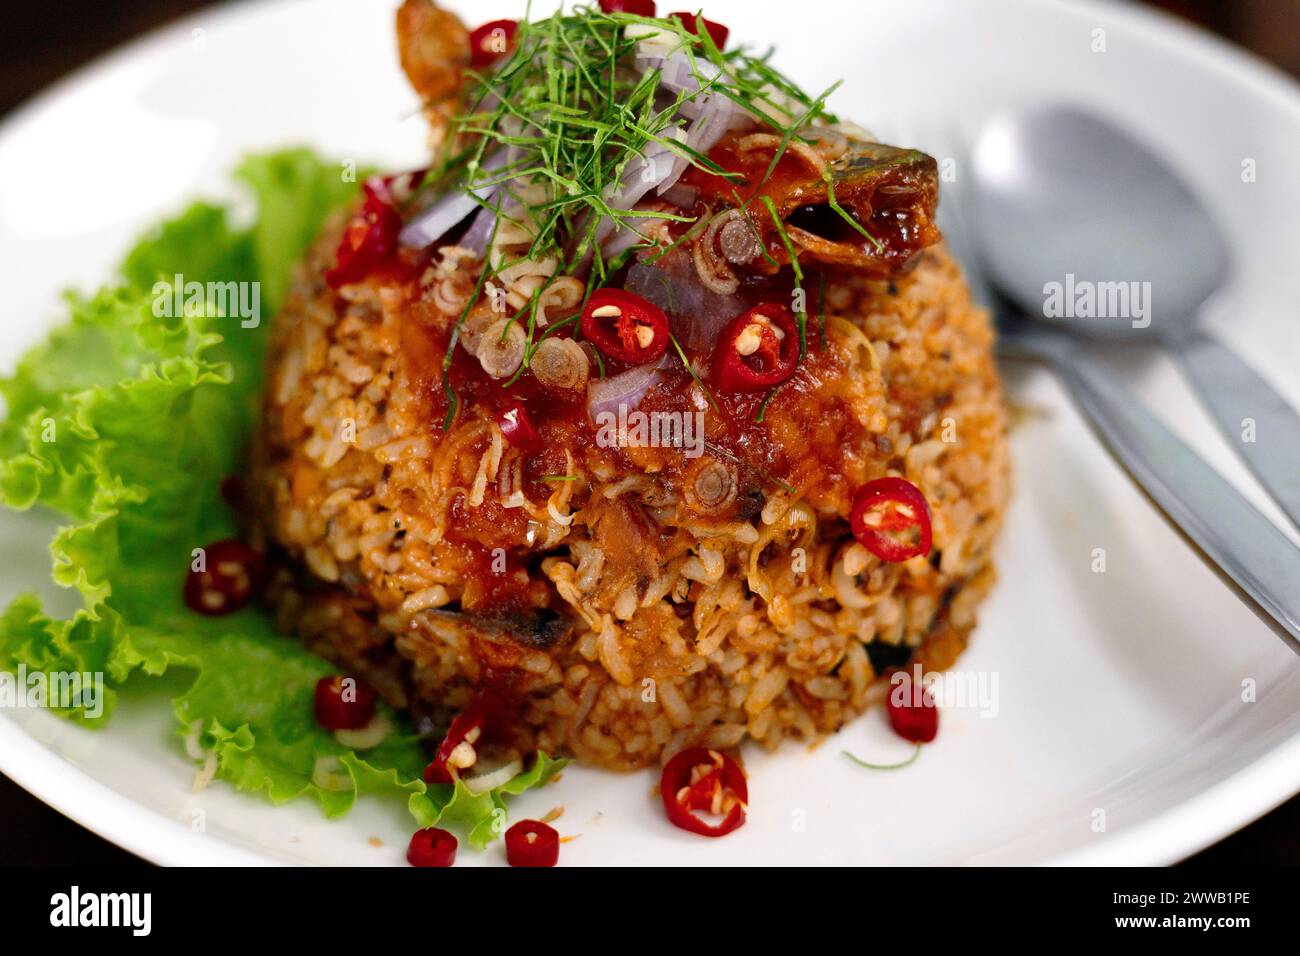 Thailändisches Essen, gebratener Jasminreis mit Makrelen in der Dose in Tomatensauce, garniert mit roter Chili, roten Zwiebeln, Salat und Kaffir-Limettenblättern. Stockfoto